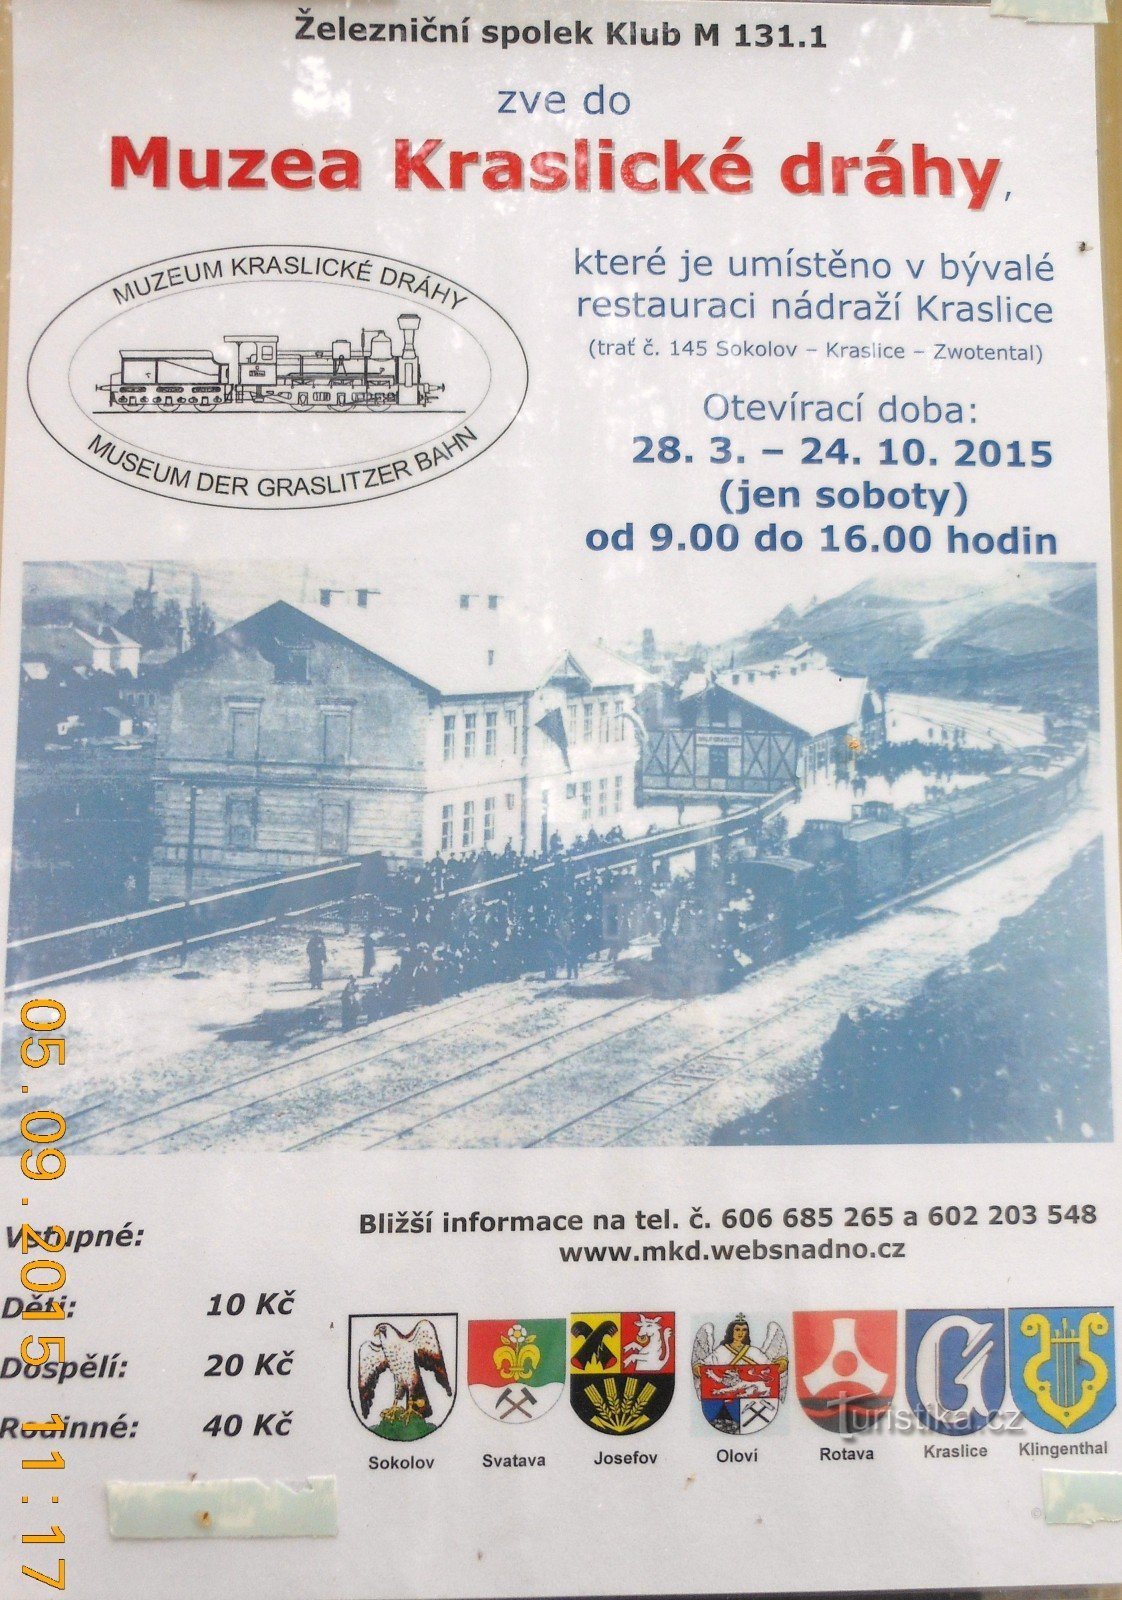 Μουσείο Σιδηροδρόμων Kraslické